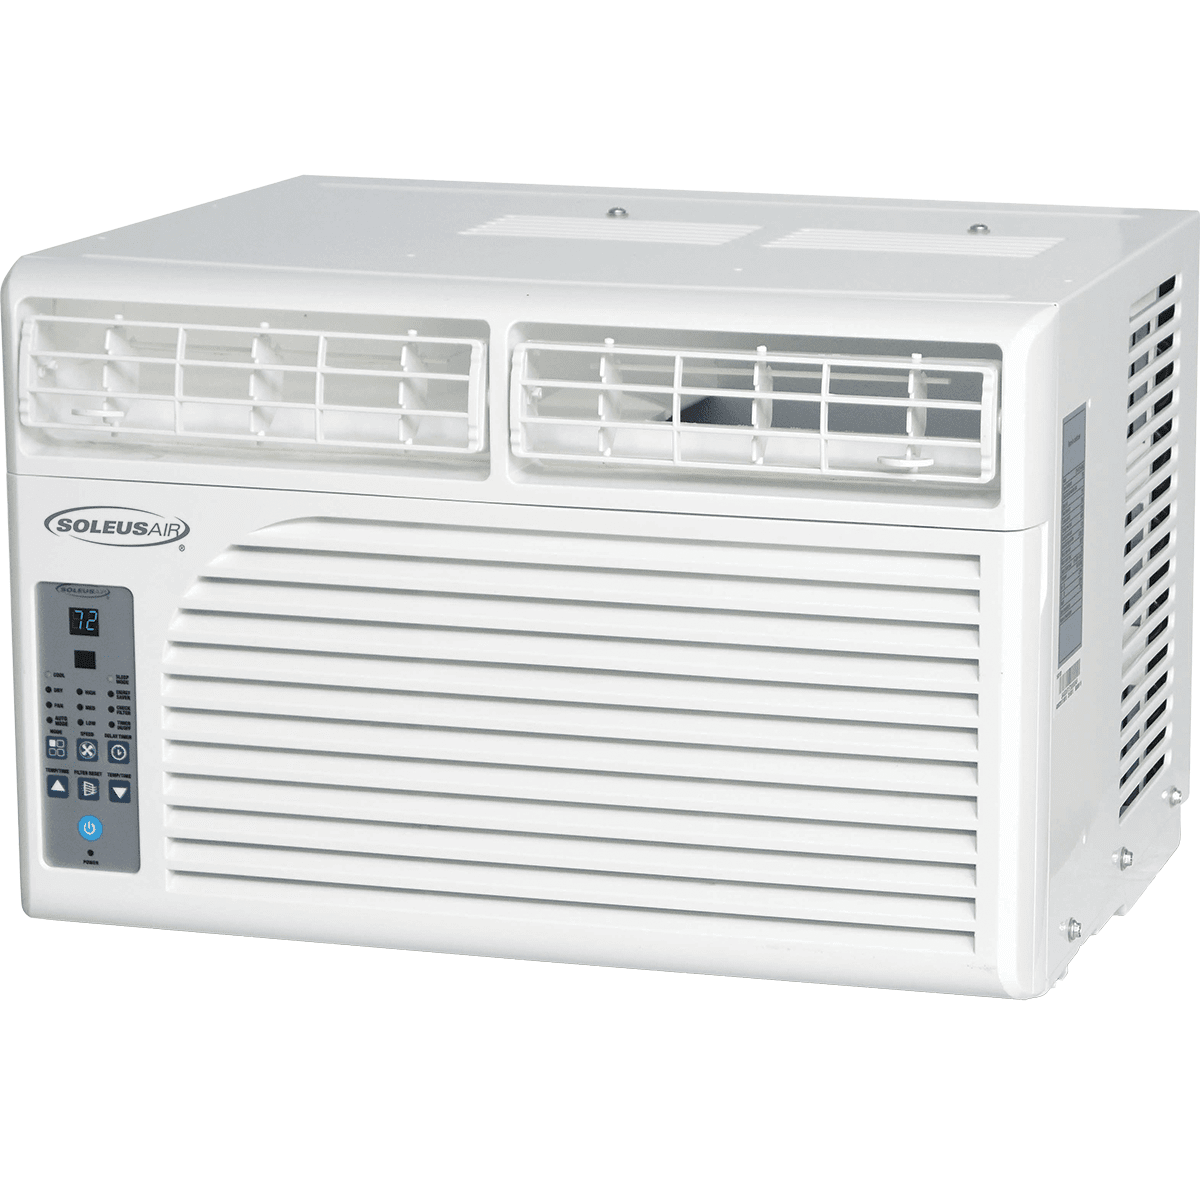 Soleus Air 8,500 Btu Window Air Conditioner (ws1-08e-01)